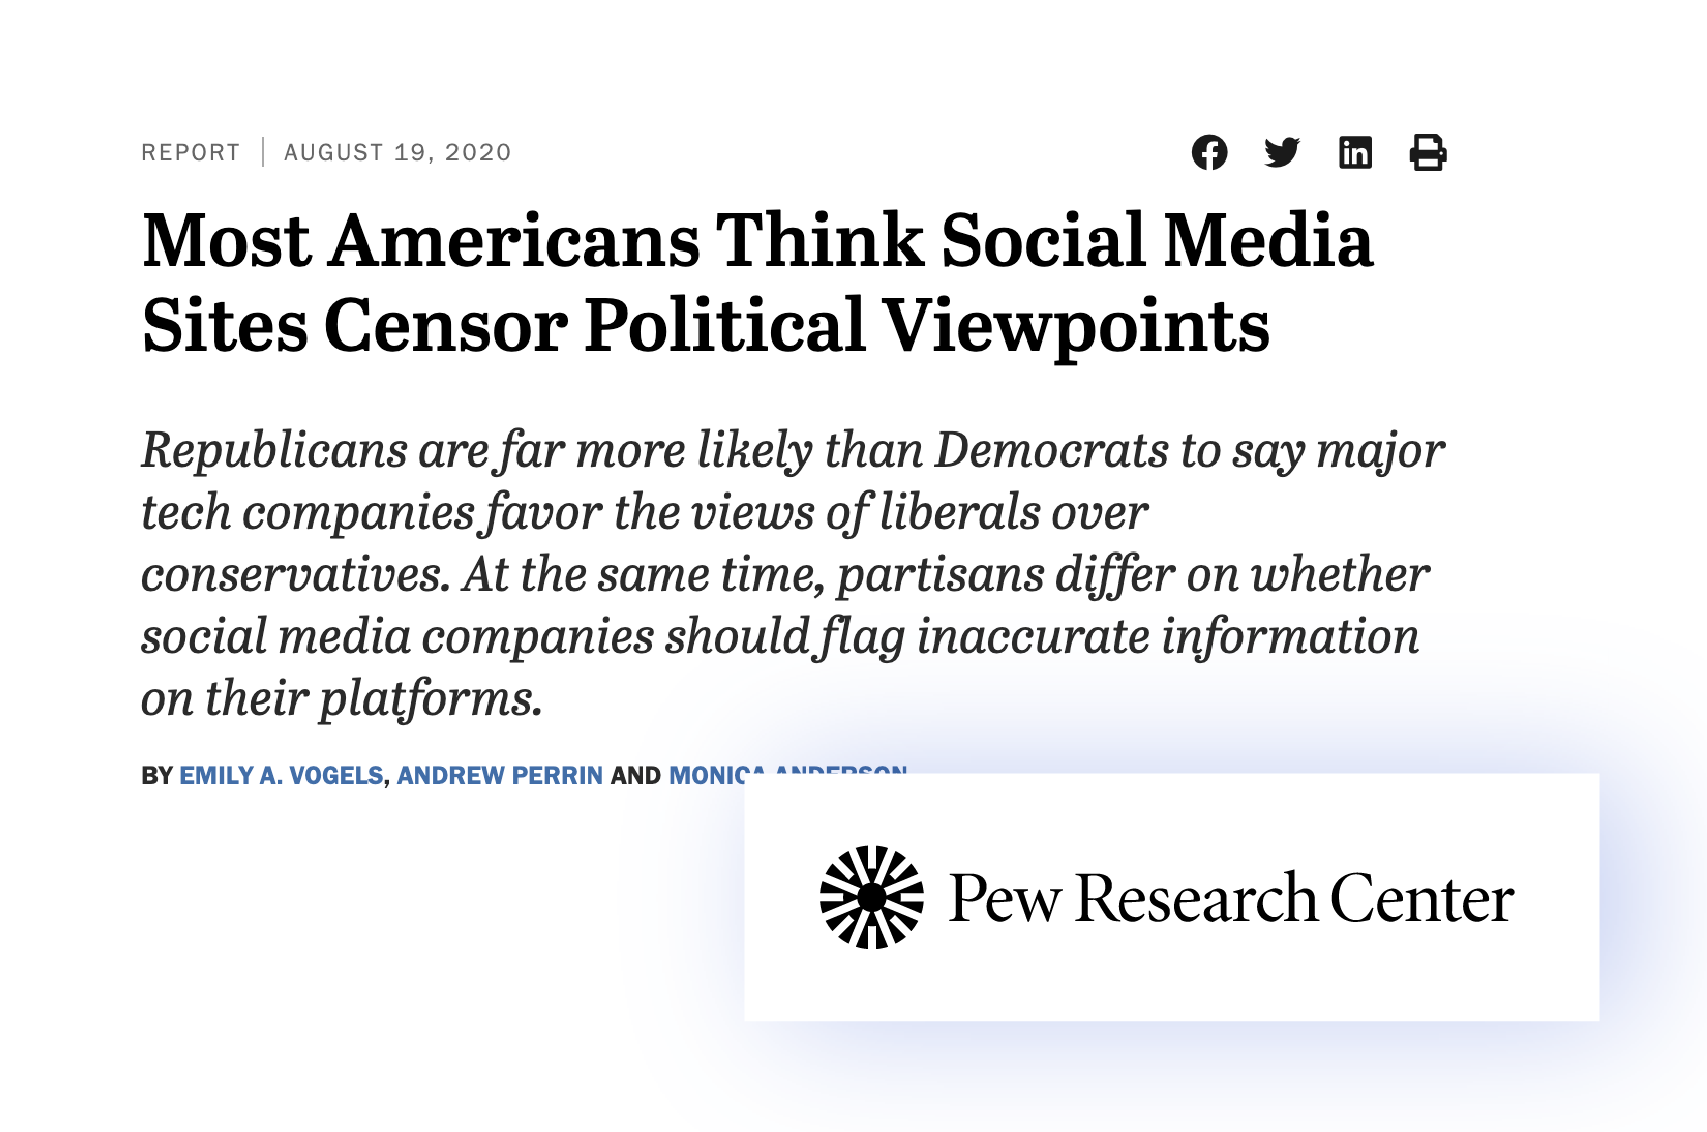 Political bias in Web2 platforms